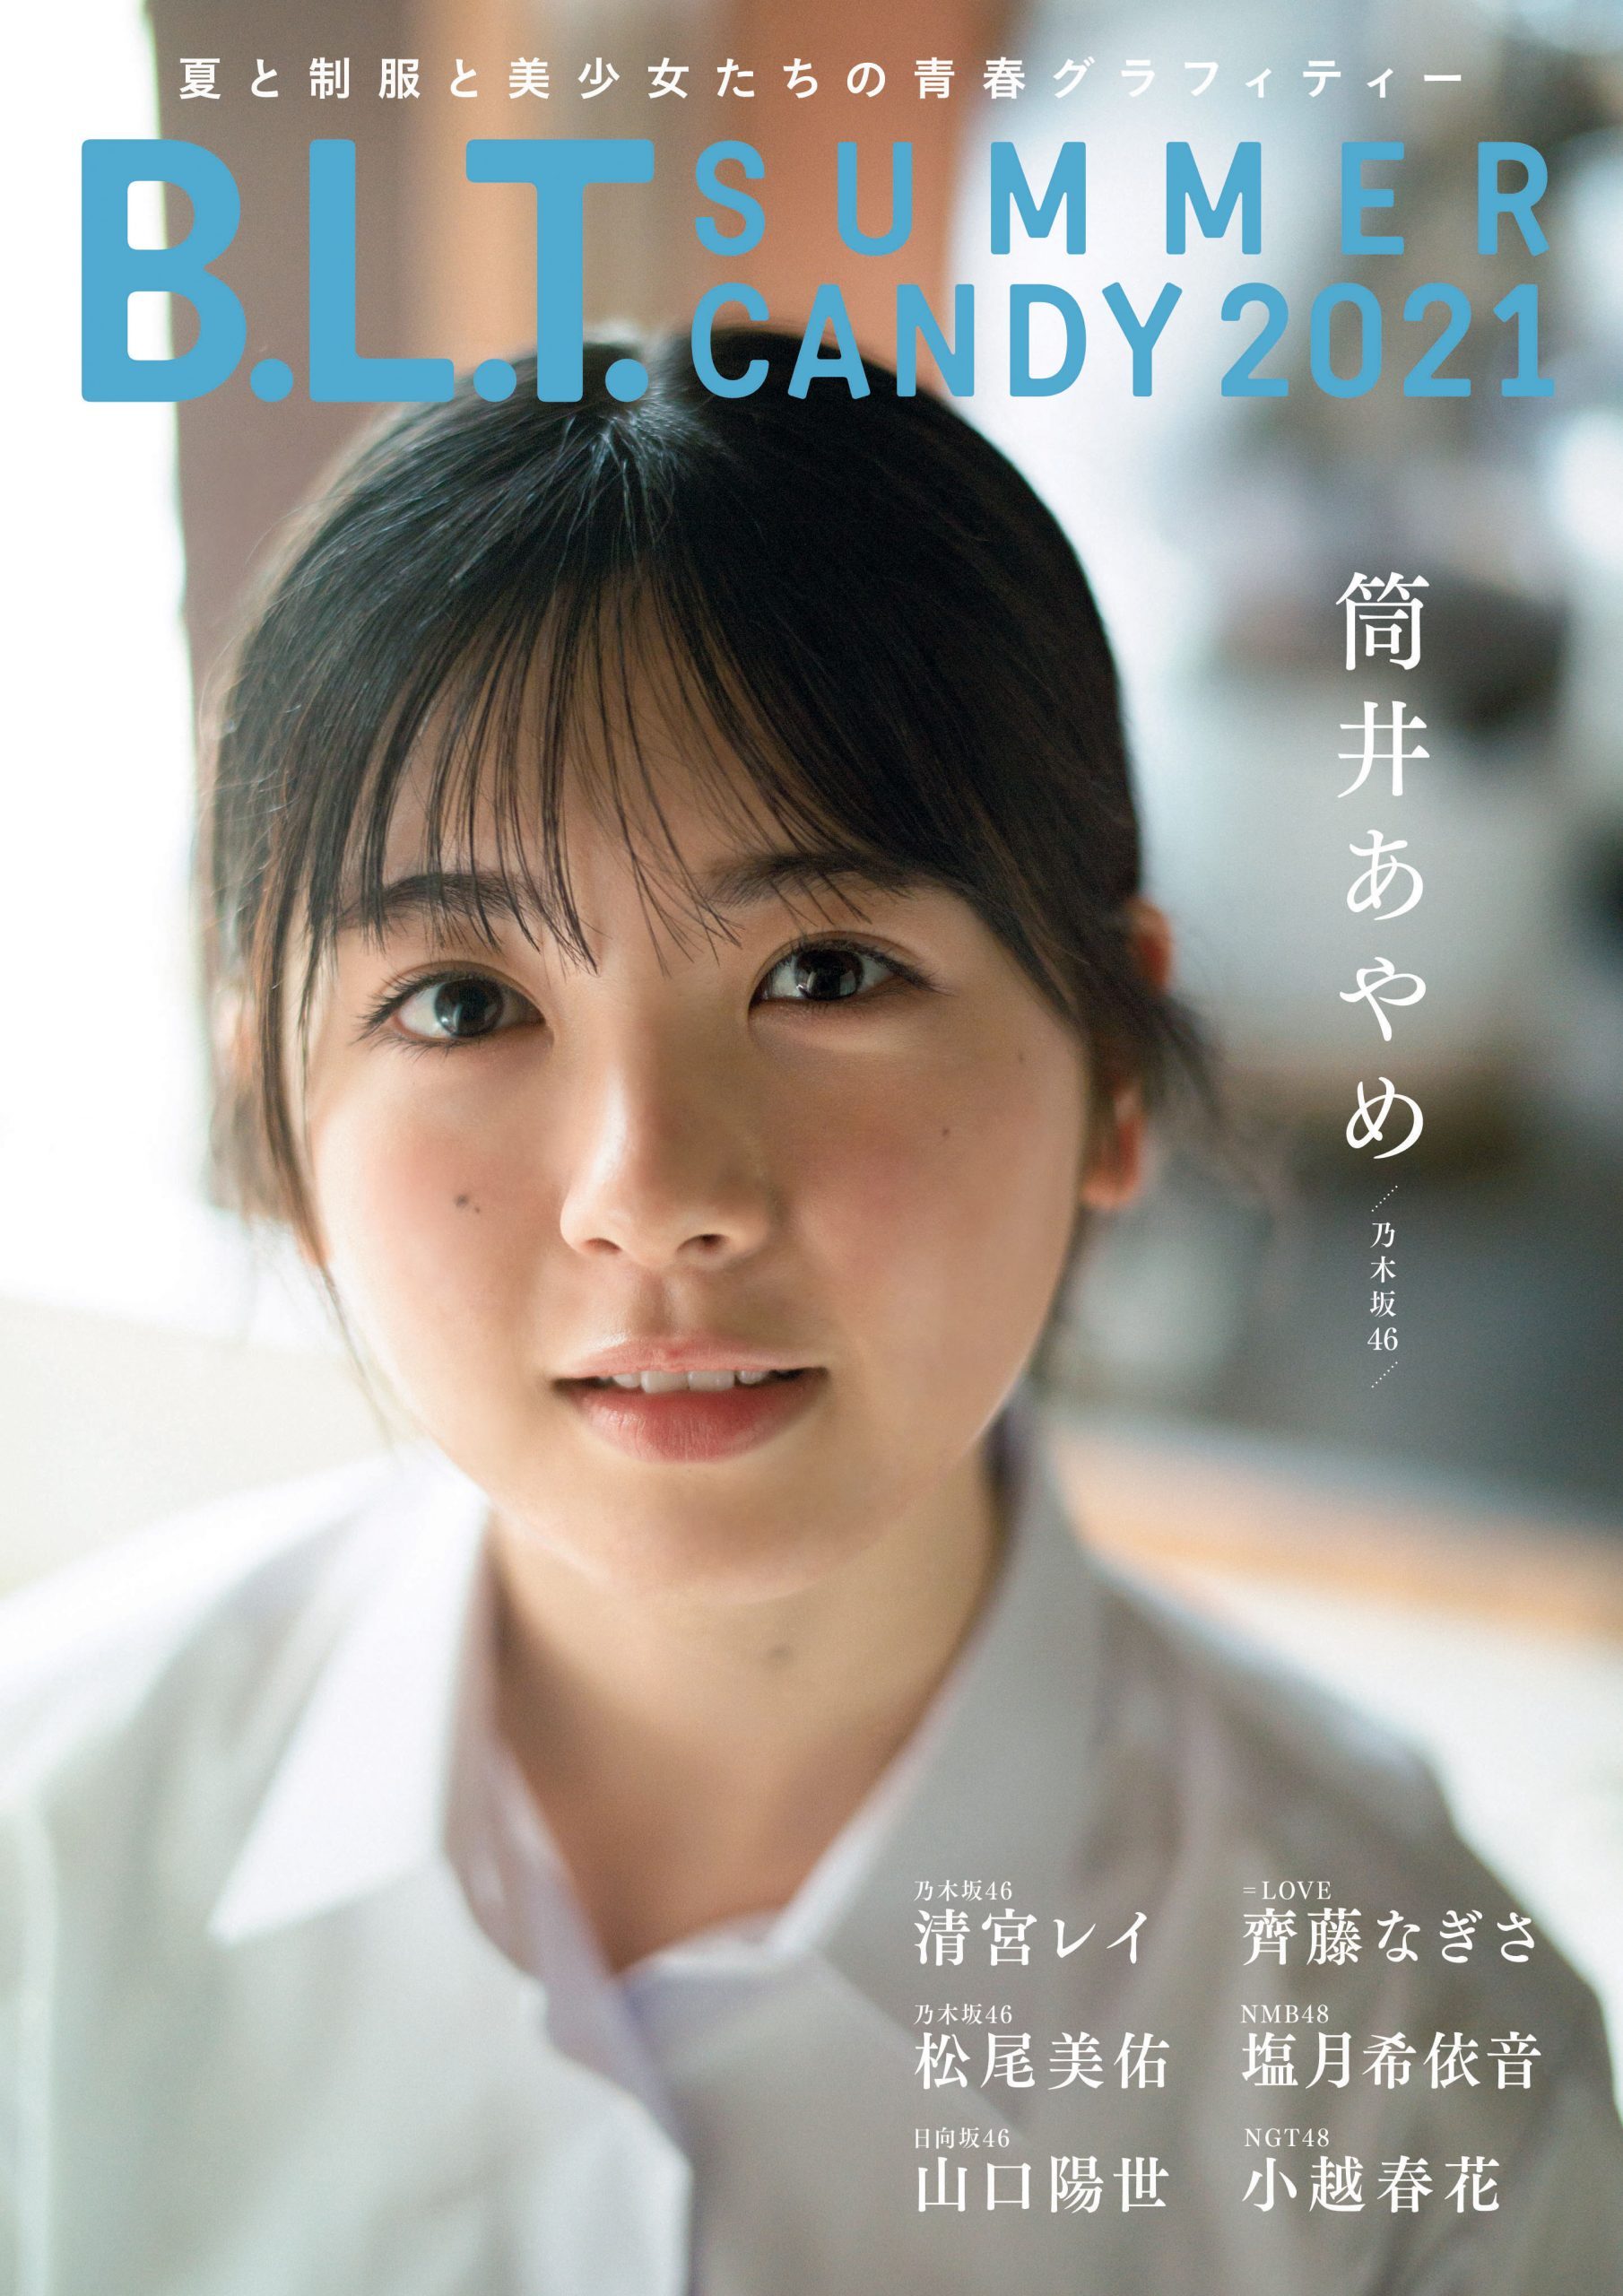 乃木坂46筒井あやめ登场『B.L.T. SUMMER CANDY 2021』封面及特典公开 - itotii